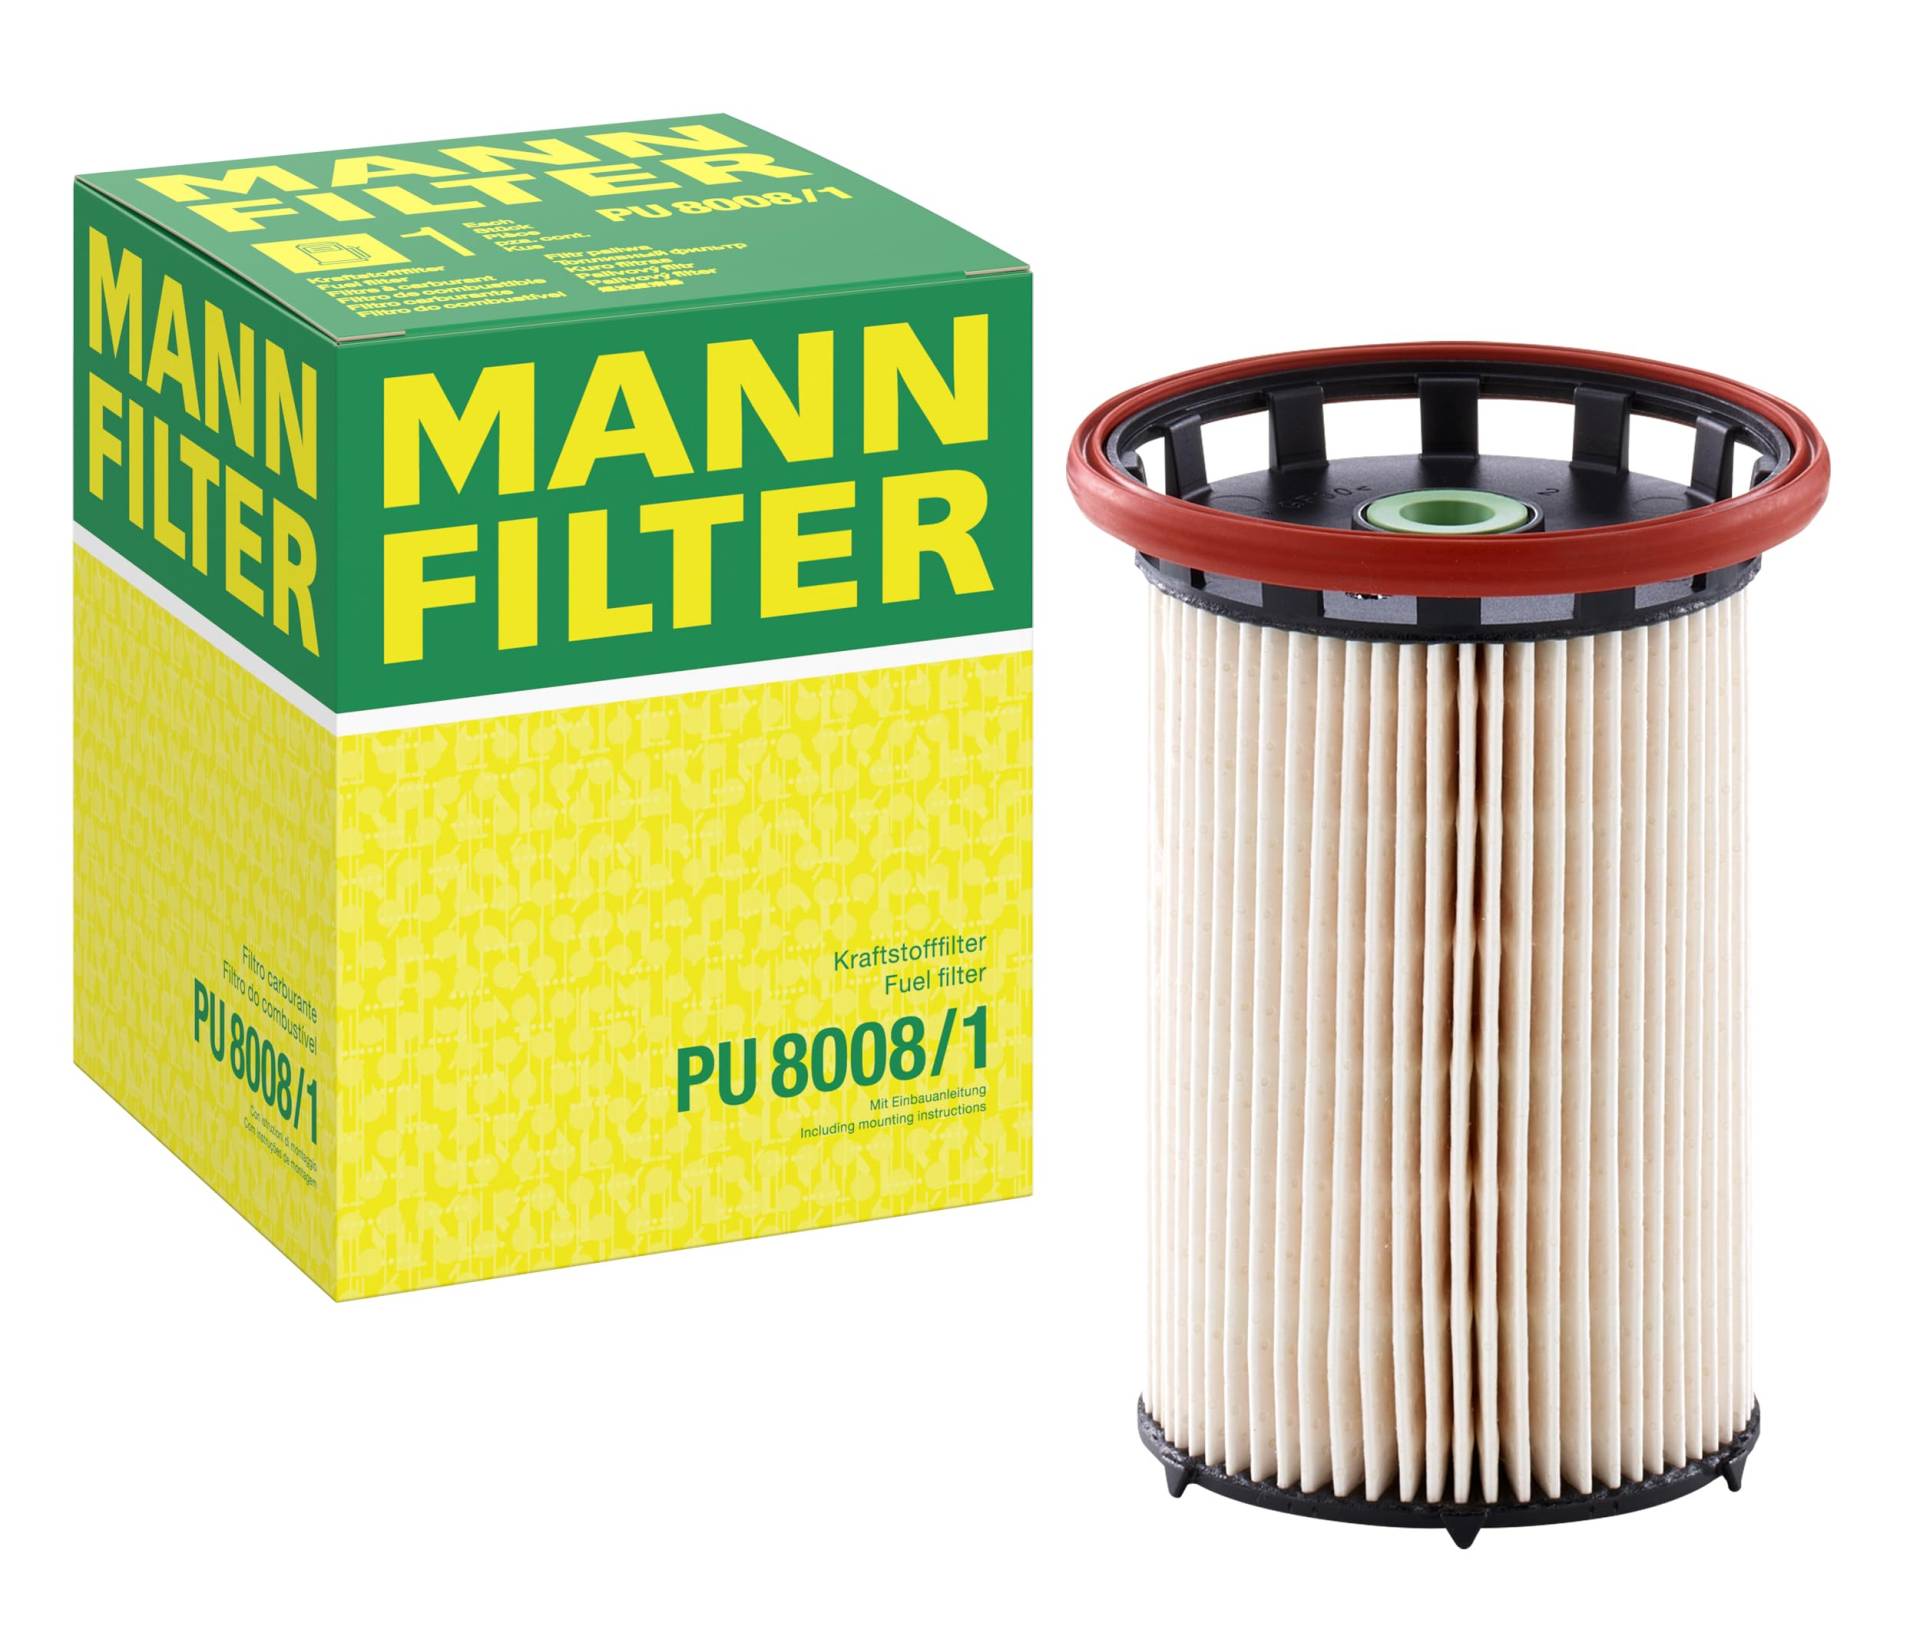 MANN-FILTER PU 8008/1 Kraftstofffilter – Für PKW von MANN-FILTER